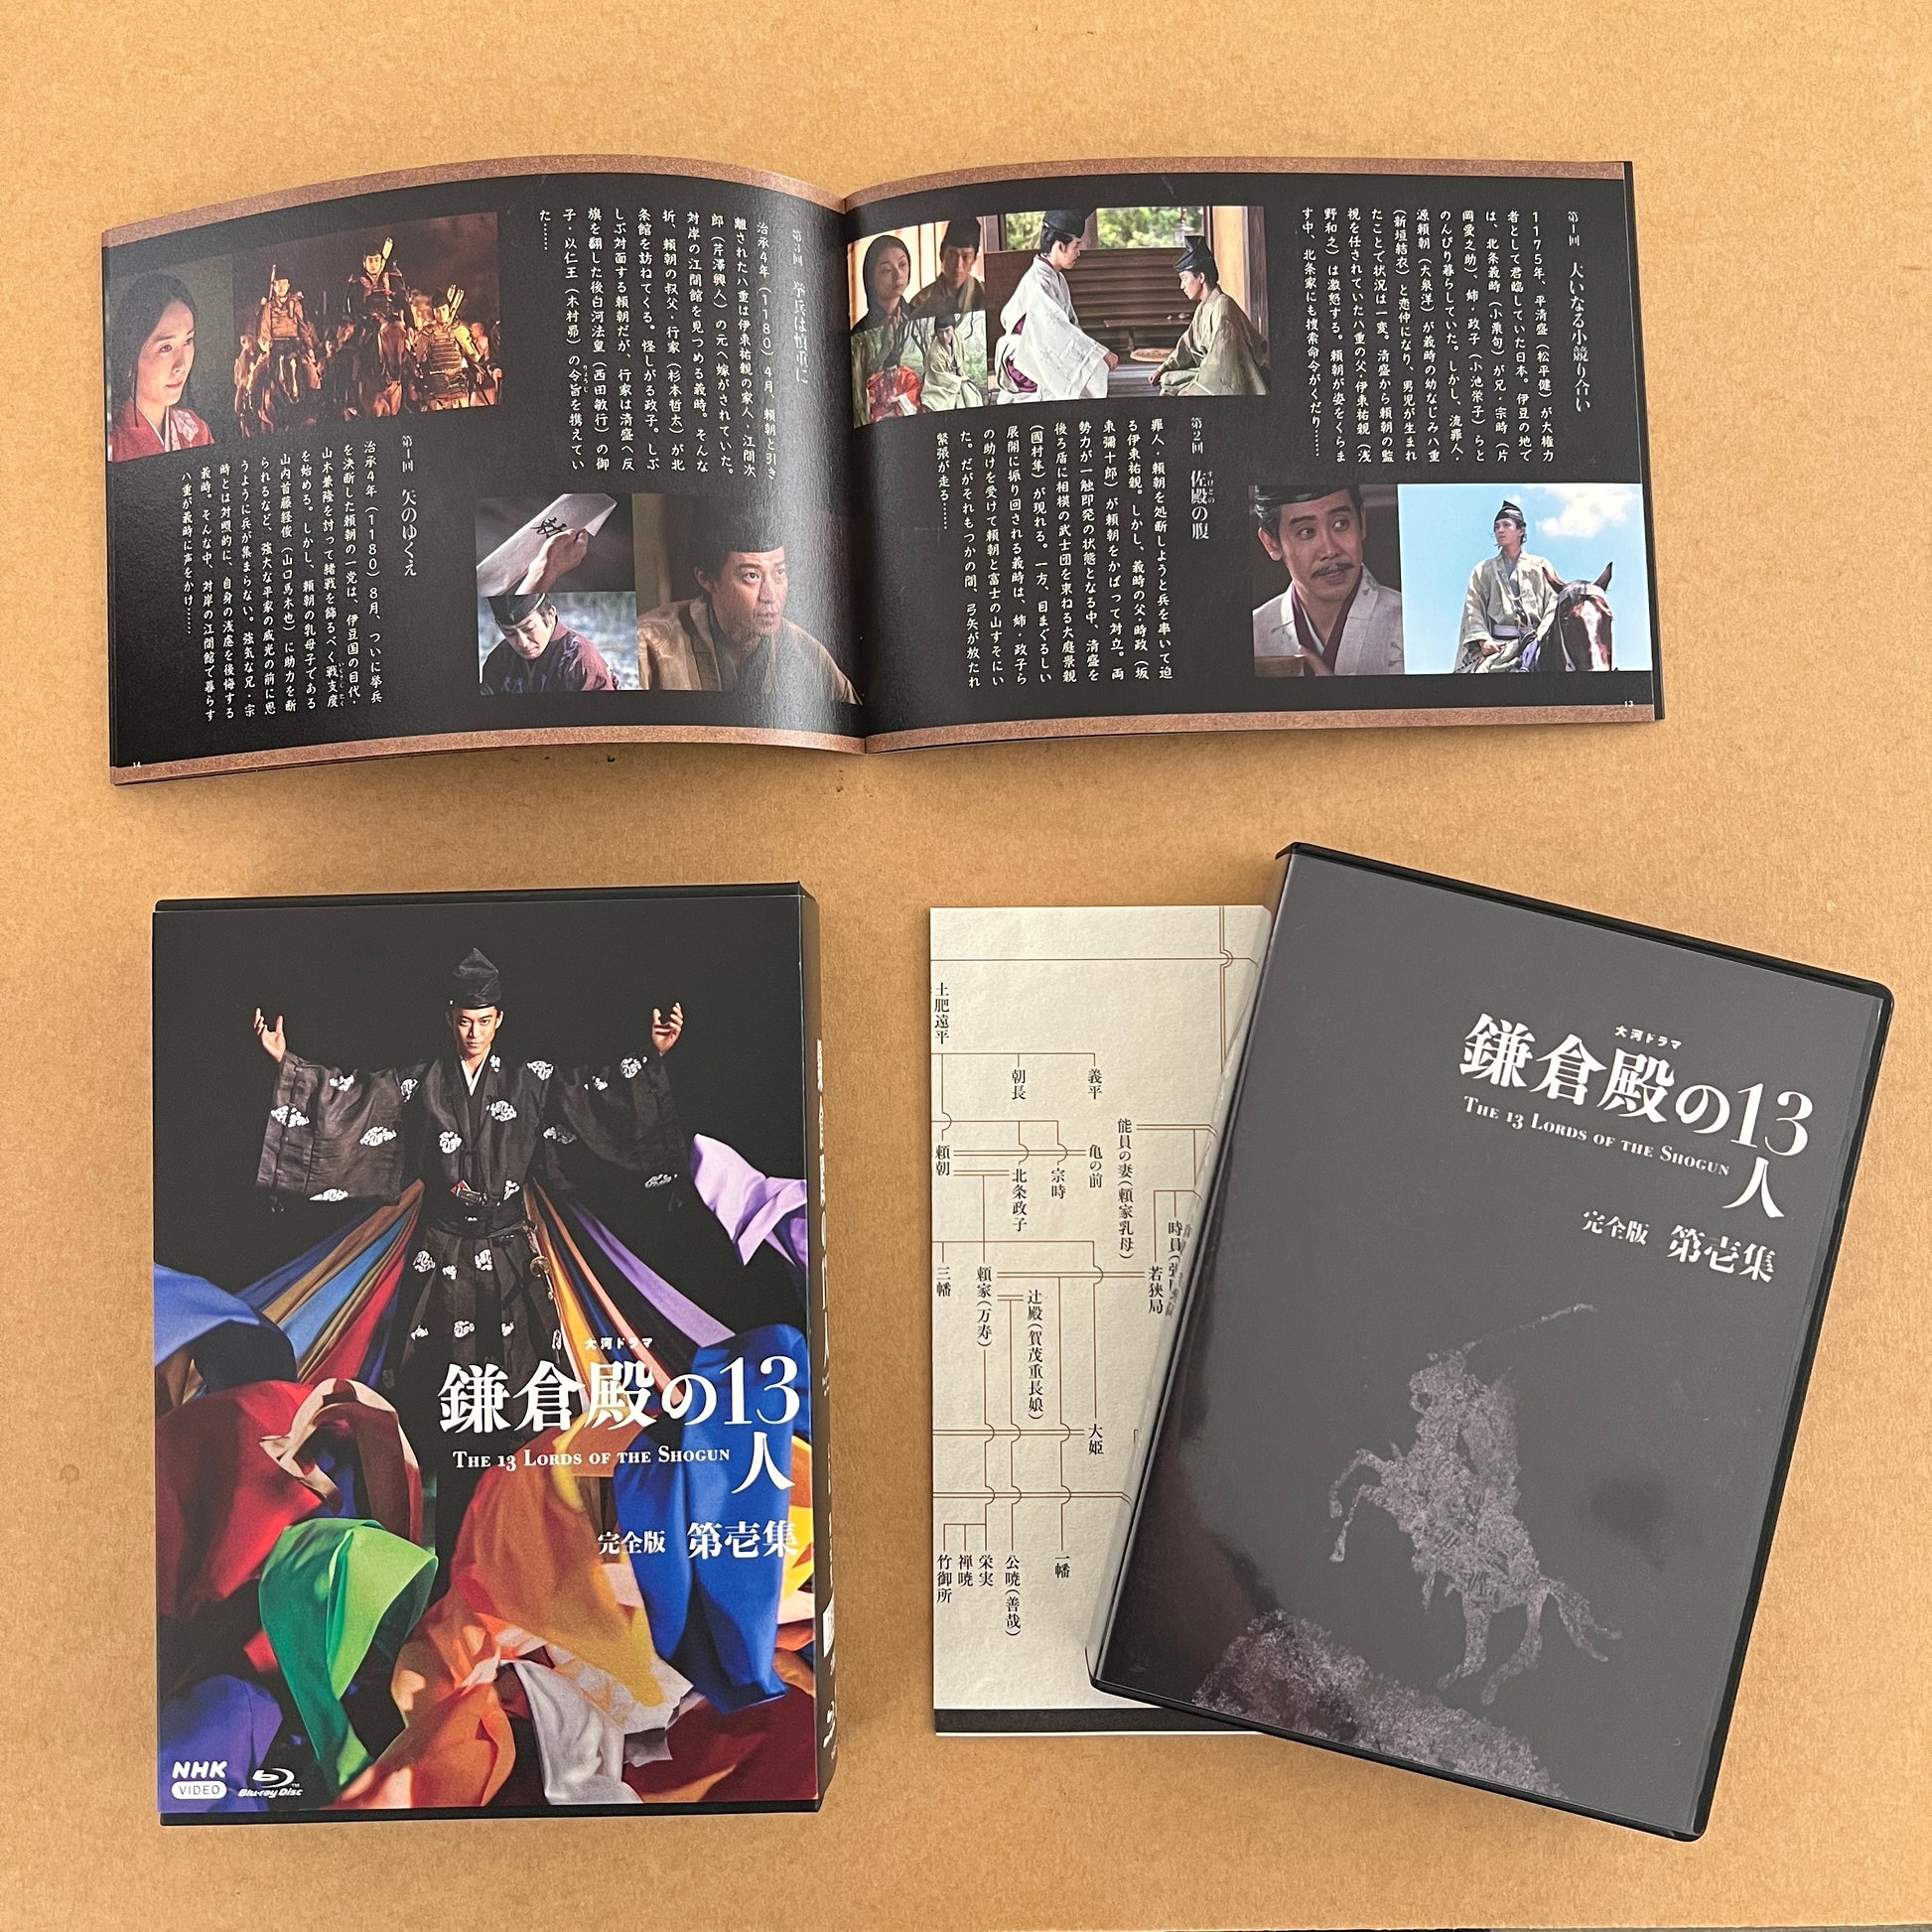 鎌倉殿の13人 完全版 第壱集 ブルーレイBOX - NHKグループ公式通販